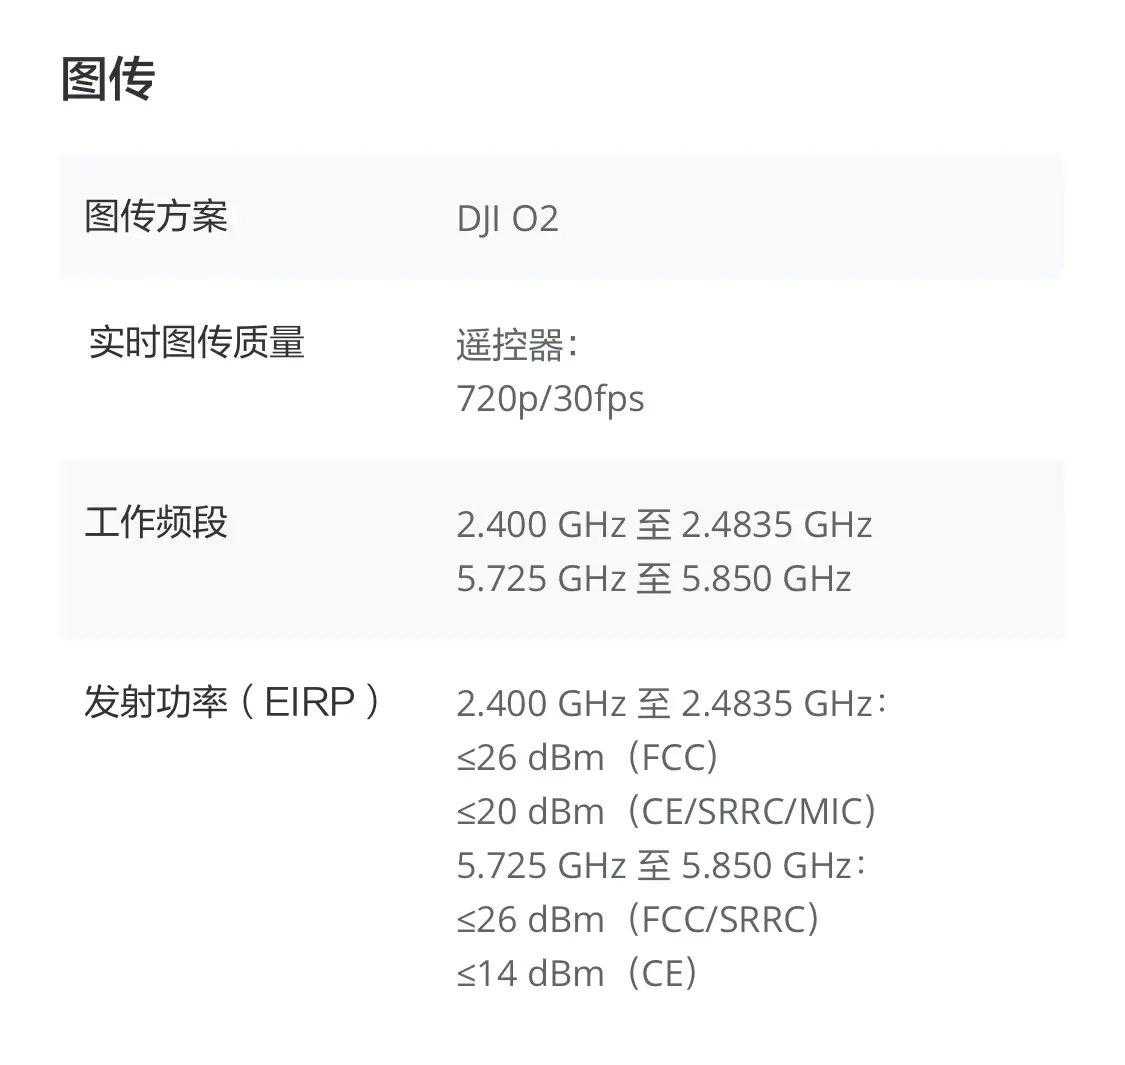 大疆DJI Mini 4K航拍无人机上架开售：重249g/续航31分钟，1499元